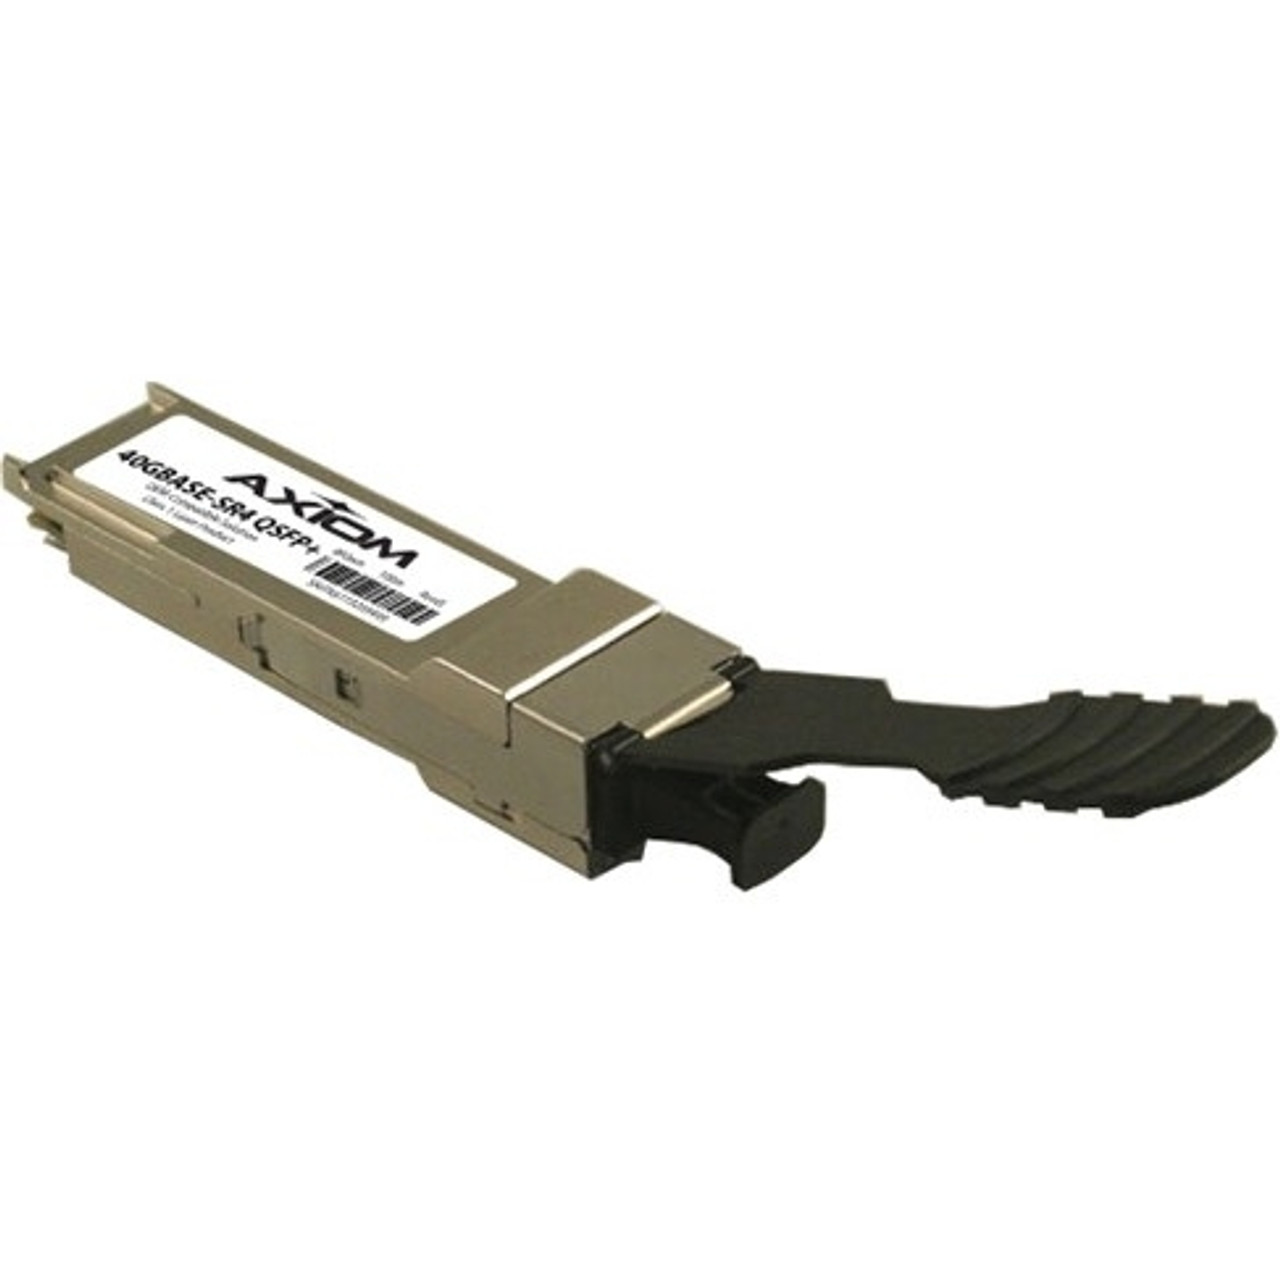 QFXQSFP40LR4-AX Axiom 40Gbps 40GBase-LR4 Single-mode Fiber 10km 1310nm LC Connector QSFP+ Transceiver Module